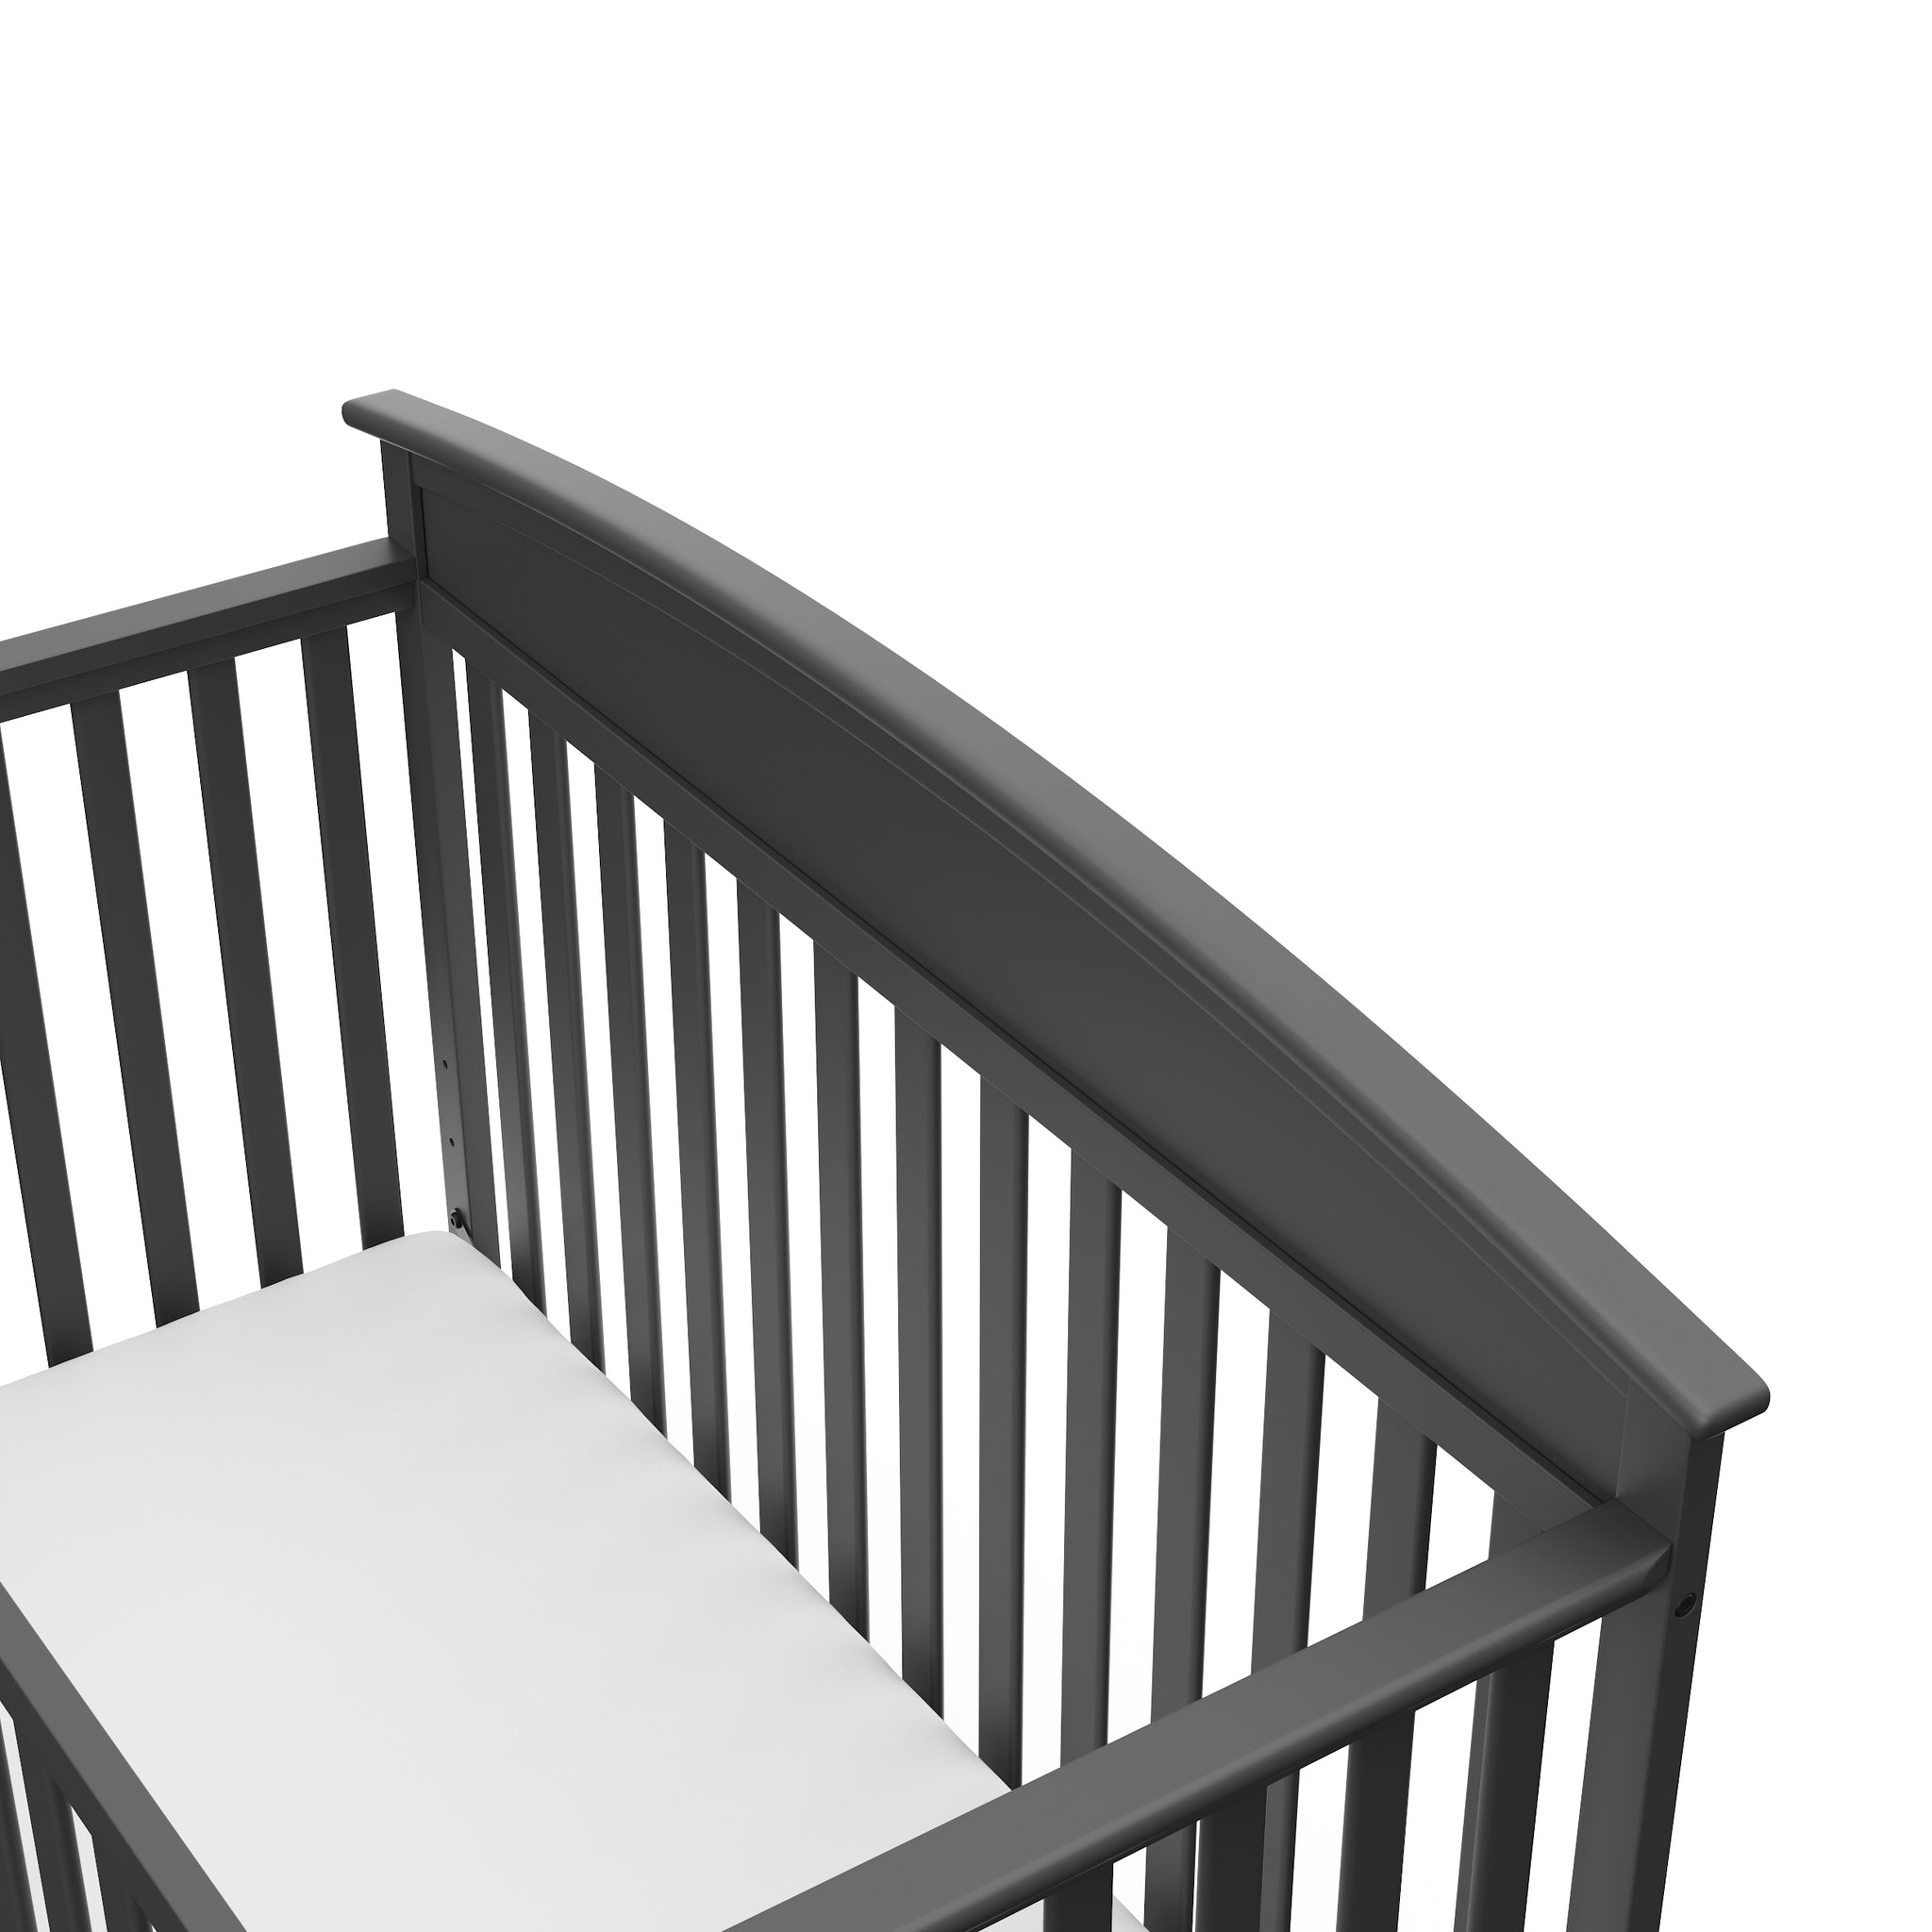 Close-up view of gray crib